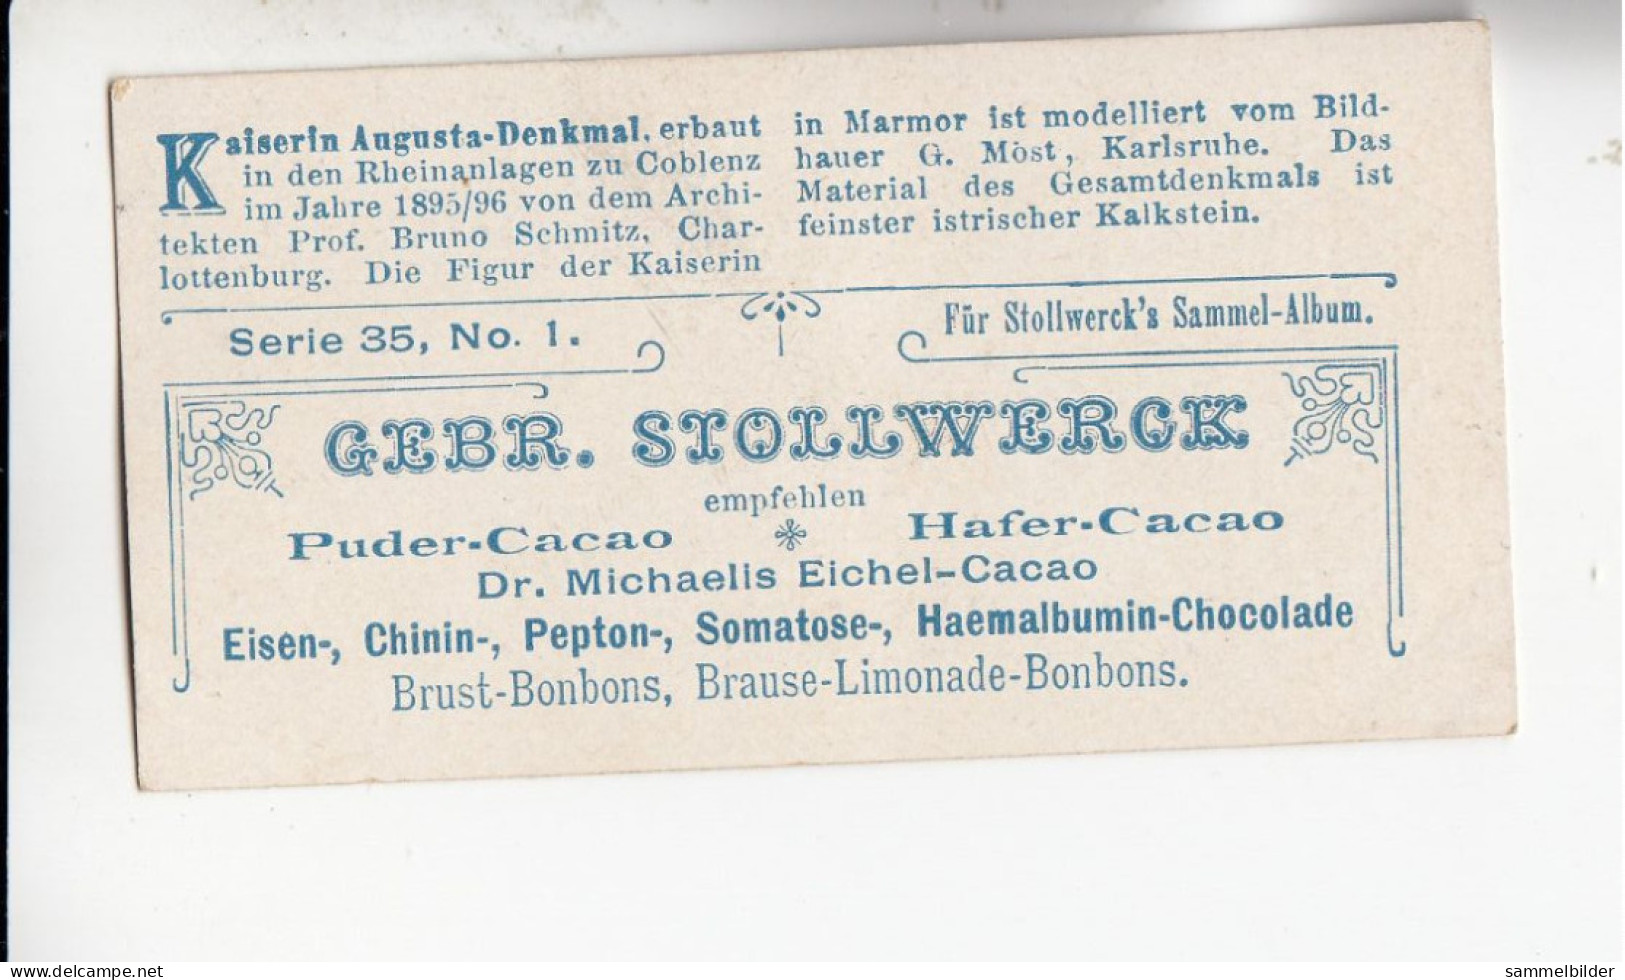 Stollwerck Album No 2 Denkmäler Kaiserin Augusta Denkmal  Gruppe 35 #1 Von 1898 - Stollwerck